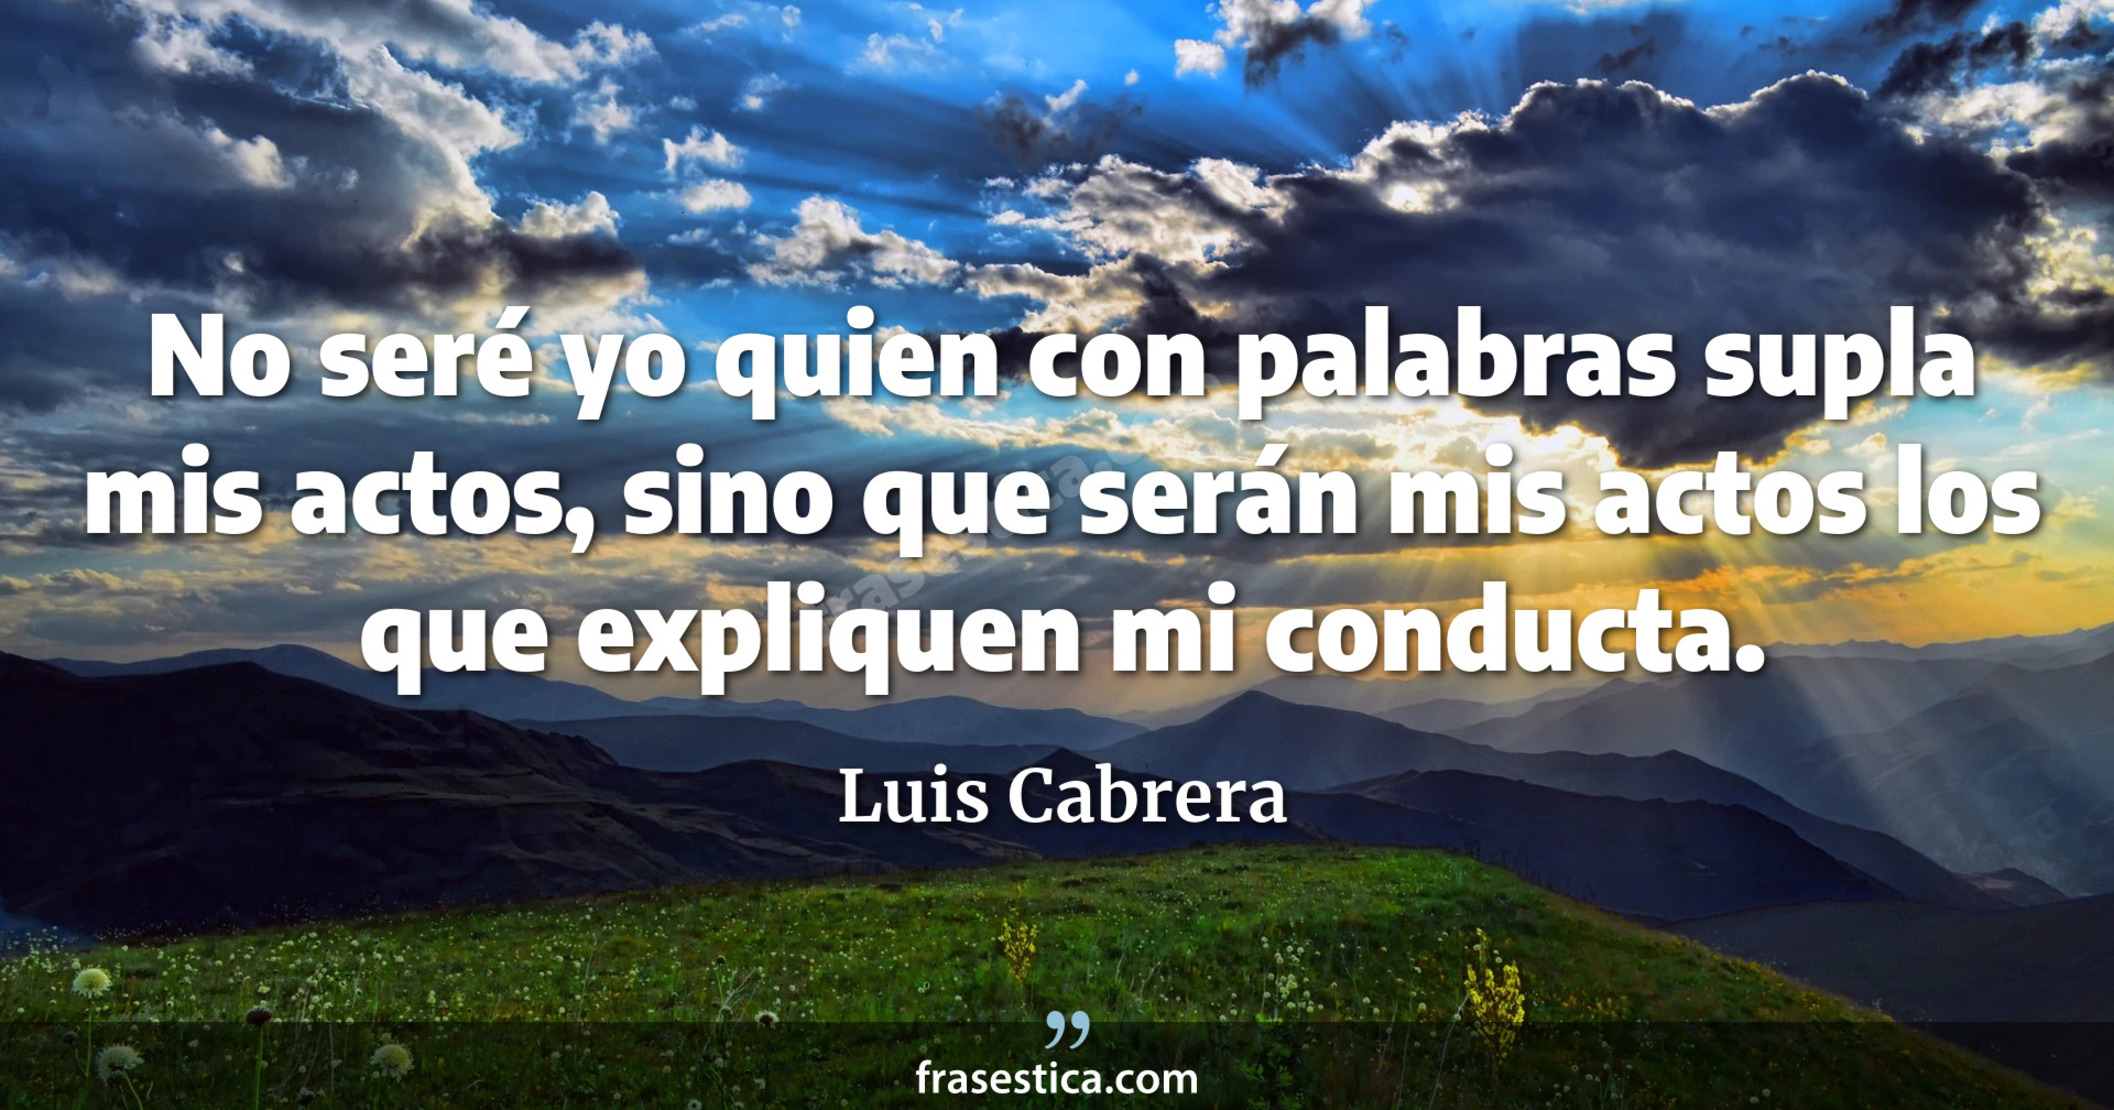 No seré yo quien con palabras supla mis actos, sino que serán mis actos los que expliquen mi conducta. - Luis Cabrera